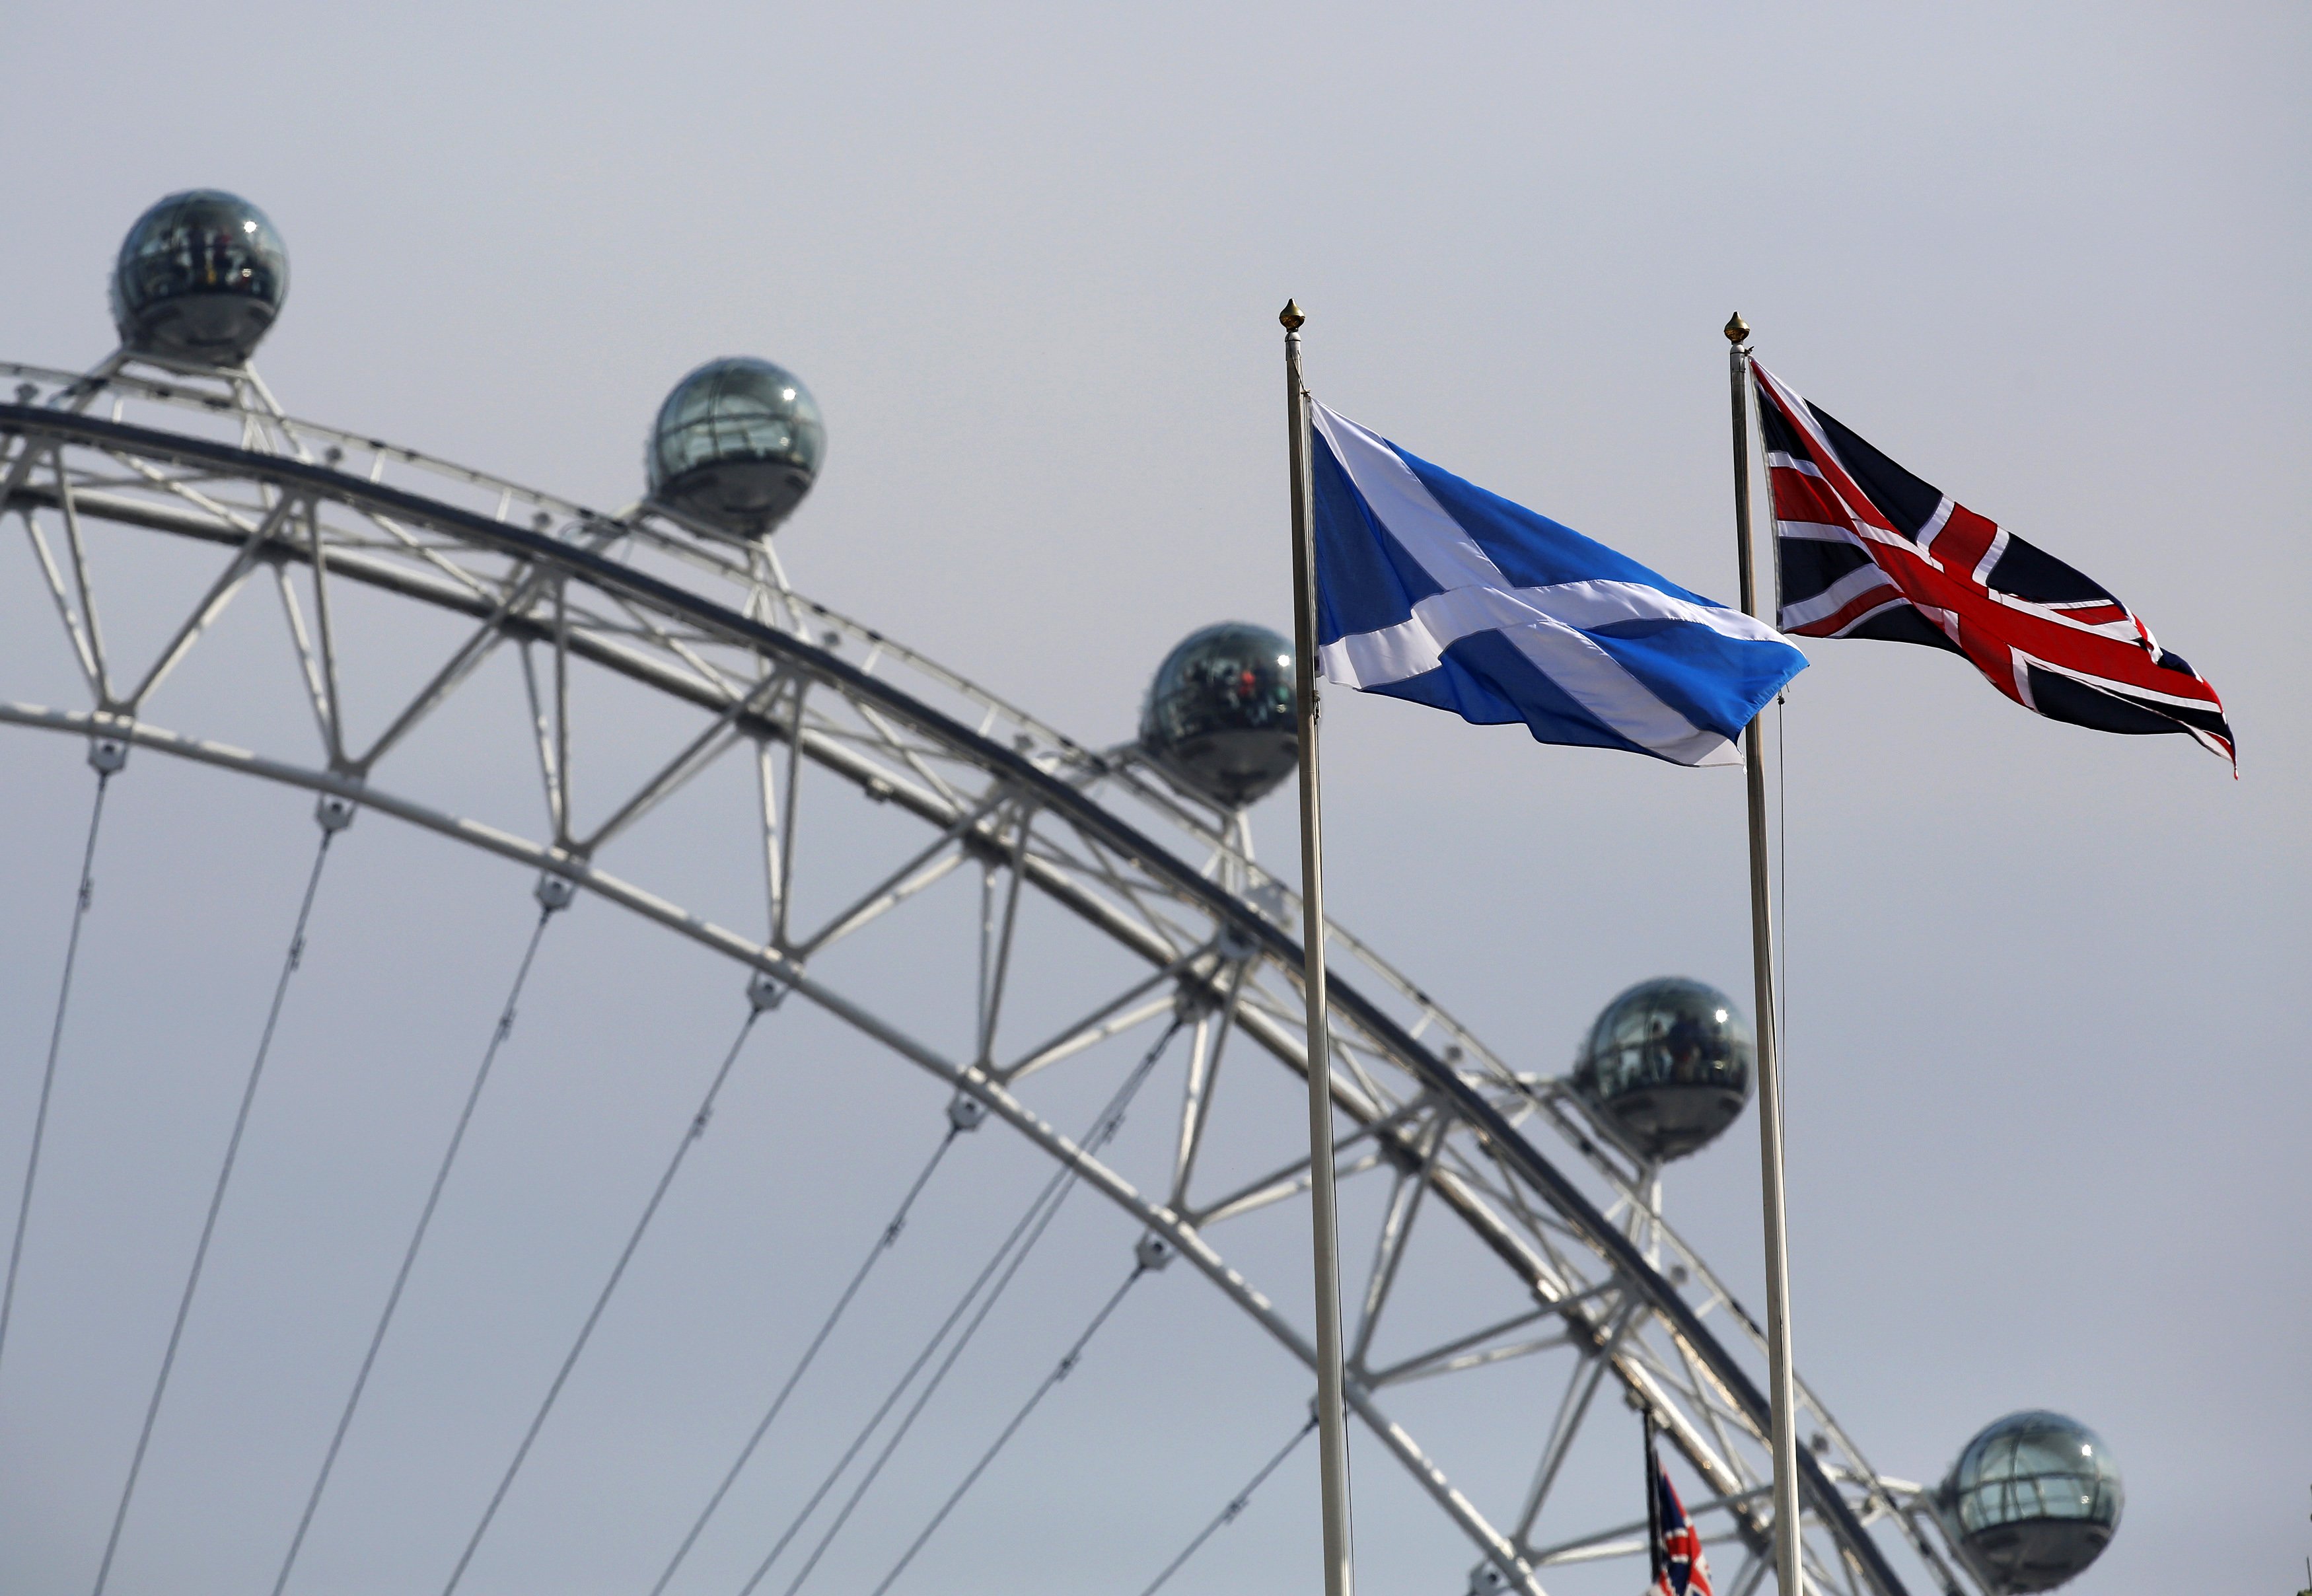 Σκωτία: Ο πρωθυπουργός Σάλμοντ παραιτήθηκε από την ηγεσία της Σκωτίας